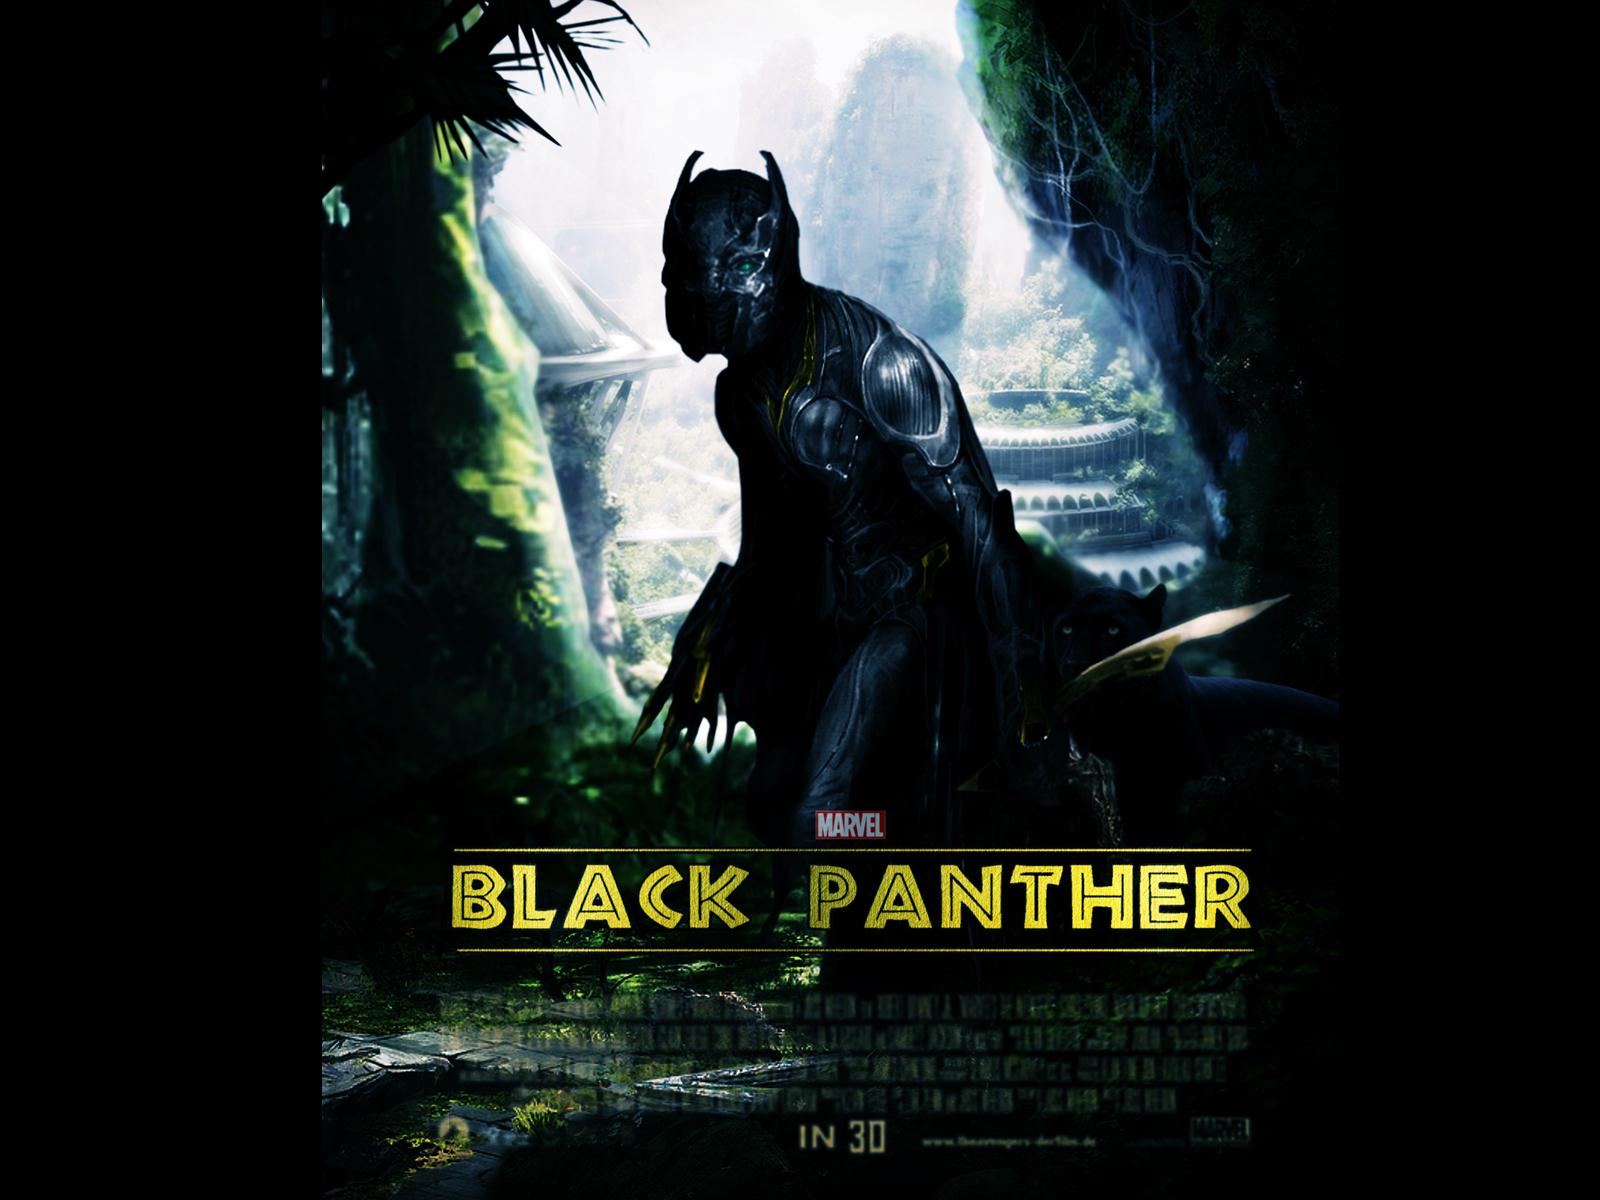 Marvel Black Panther 2017 Poster HD Wallpaper - DreamLoveBackgrounds